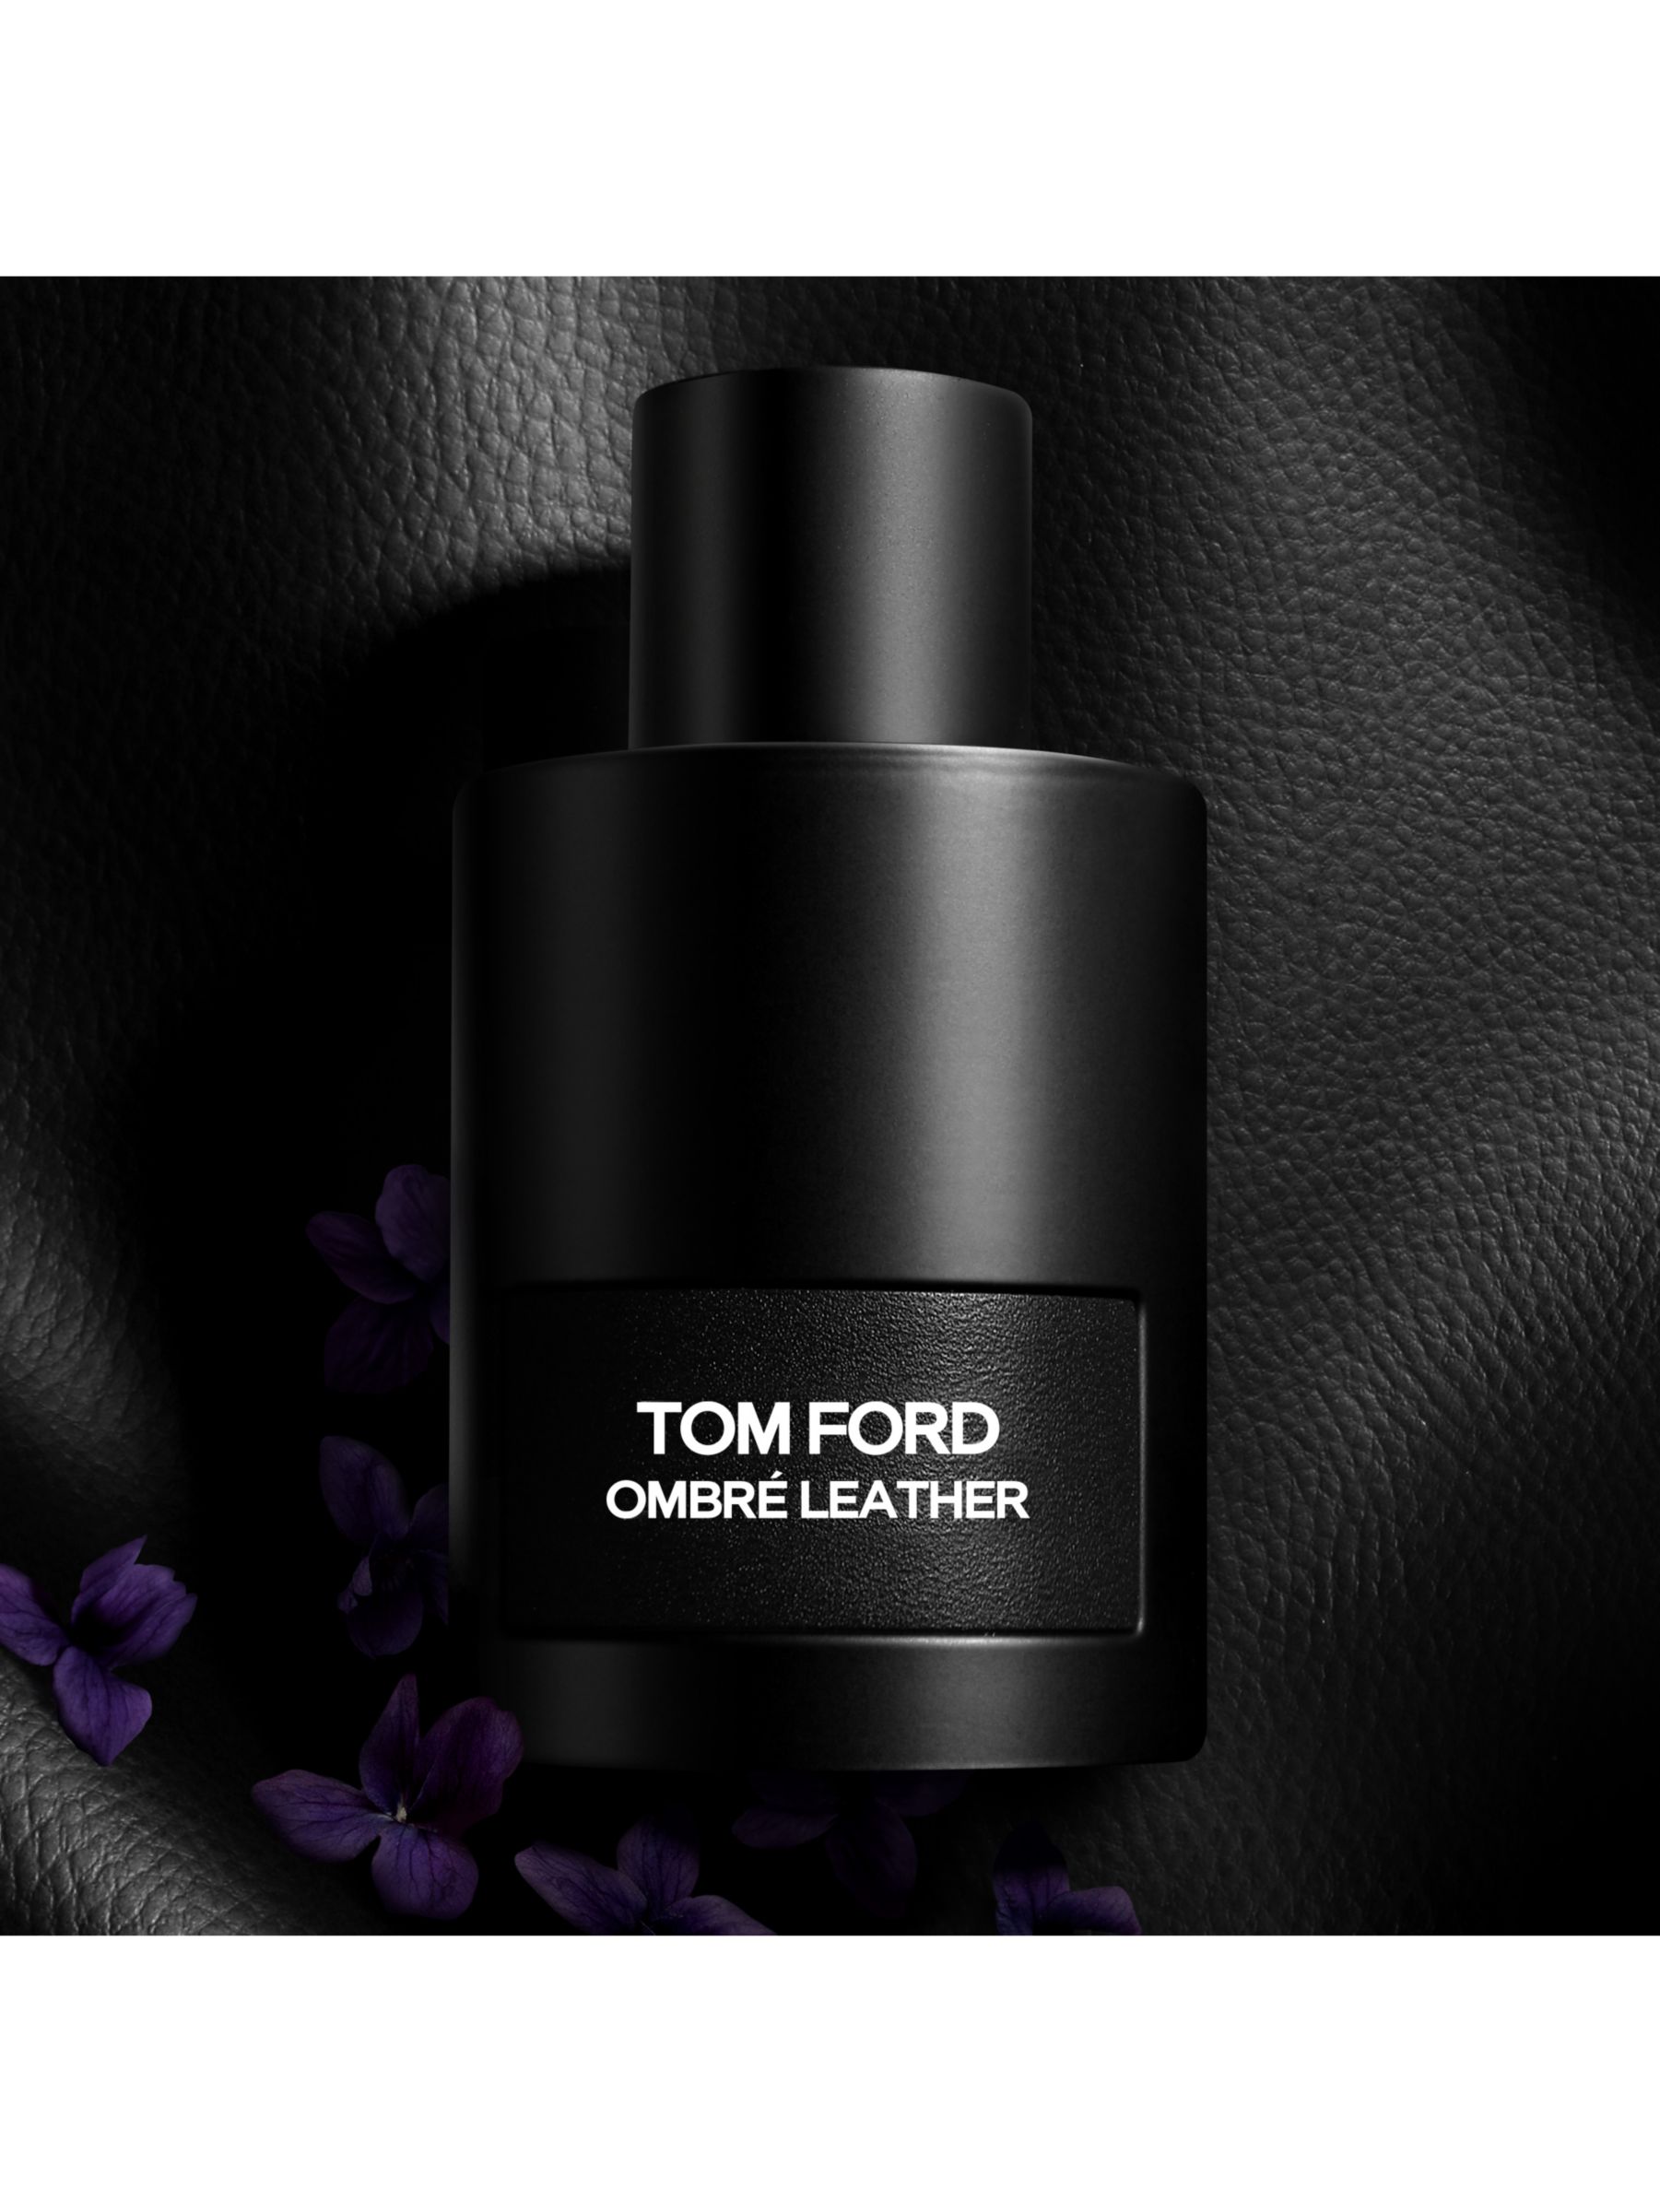 TOM FORD Ombré Leather Eau de Parfum, 50ml at John Lewis & Partners